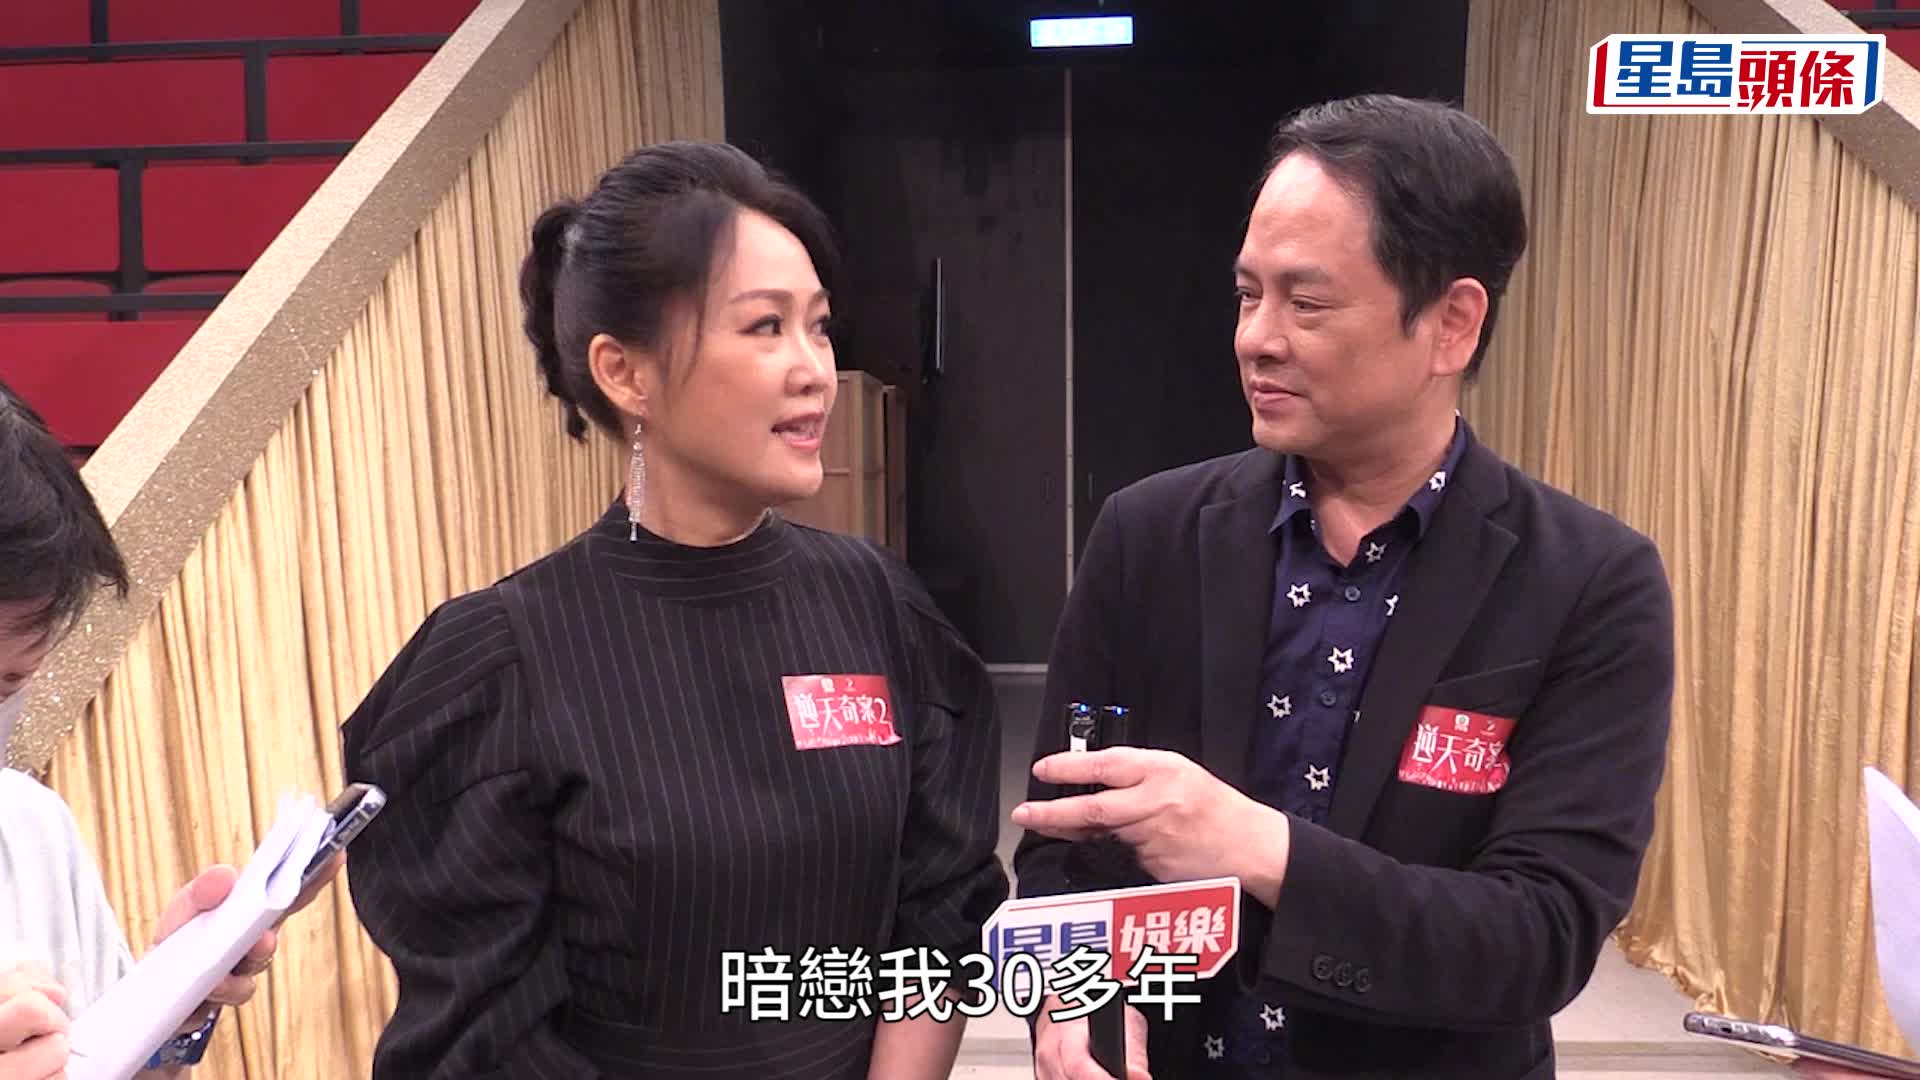 梁小冰相隔25年再拍TVB劇 與老公陳嘉輝夫婦檔開工勁興奮